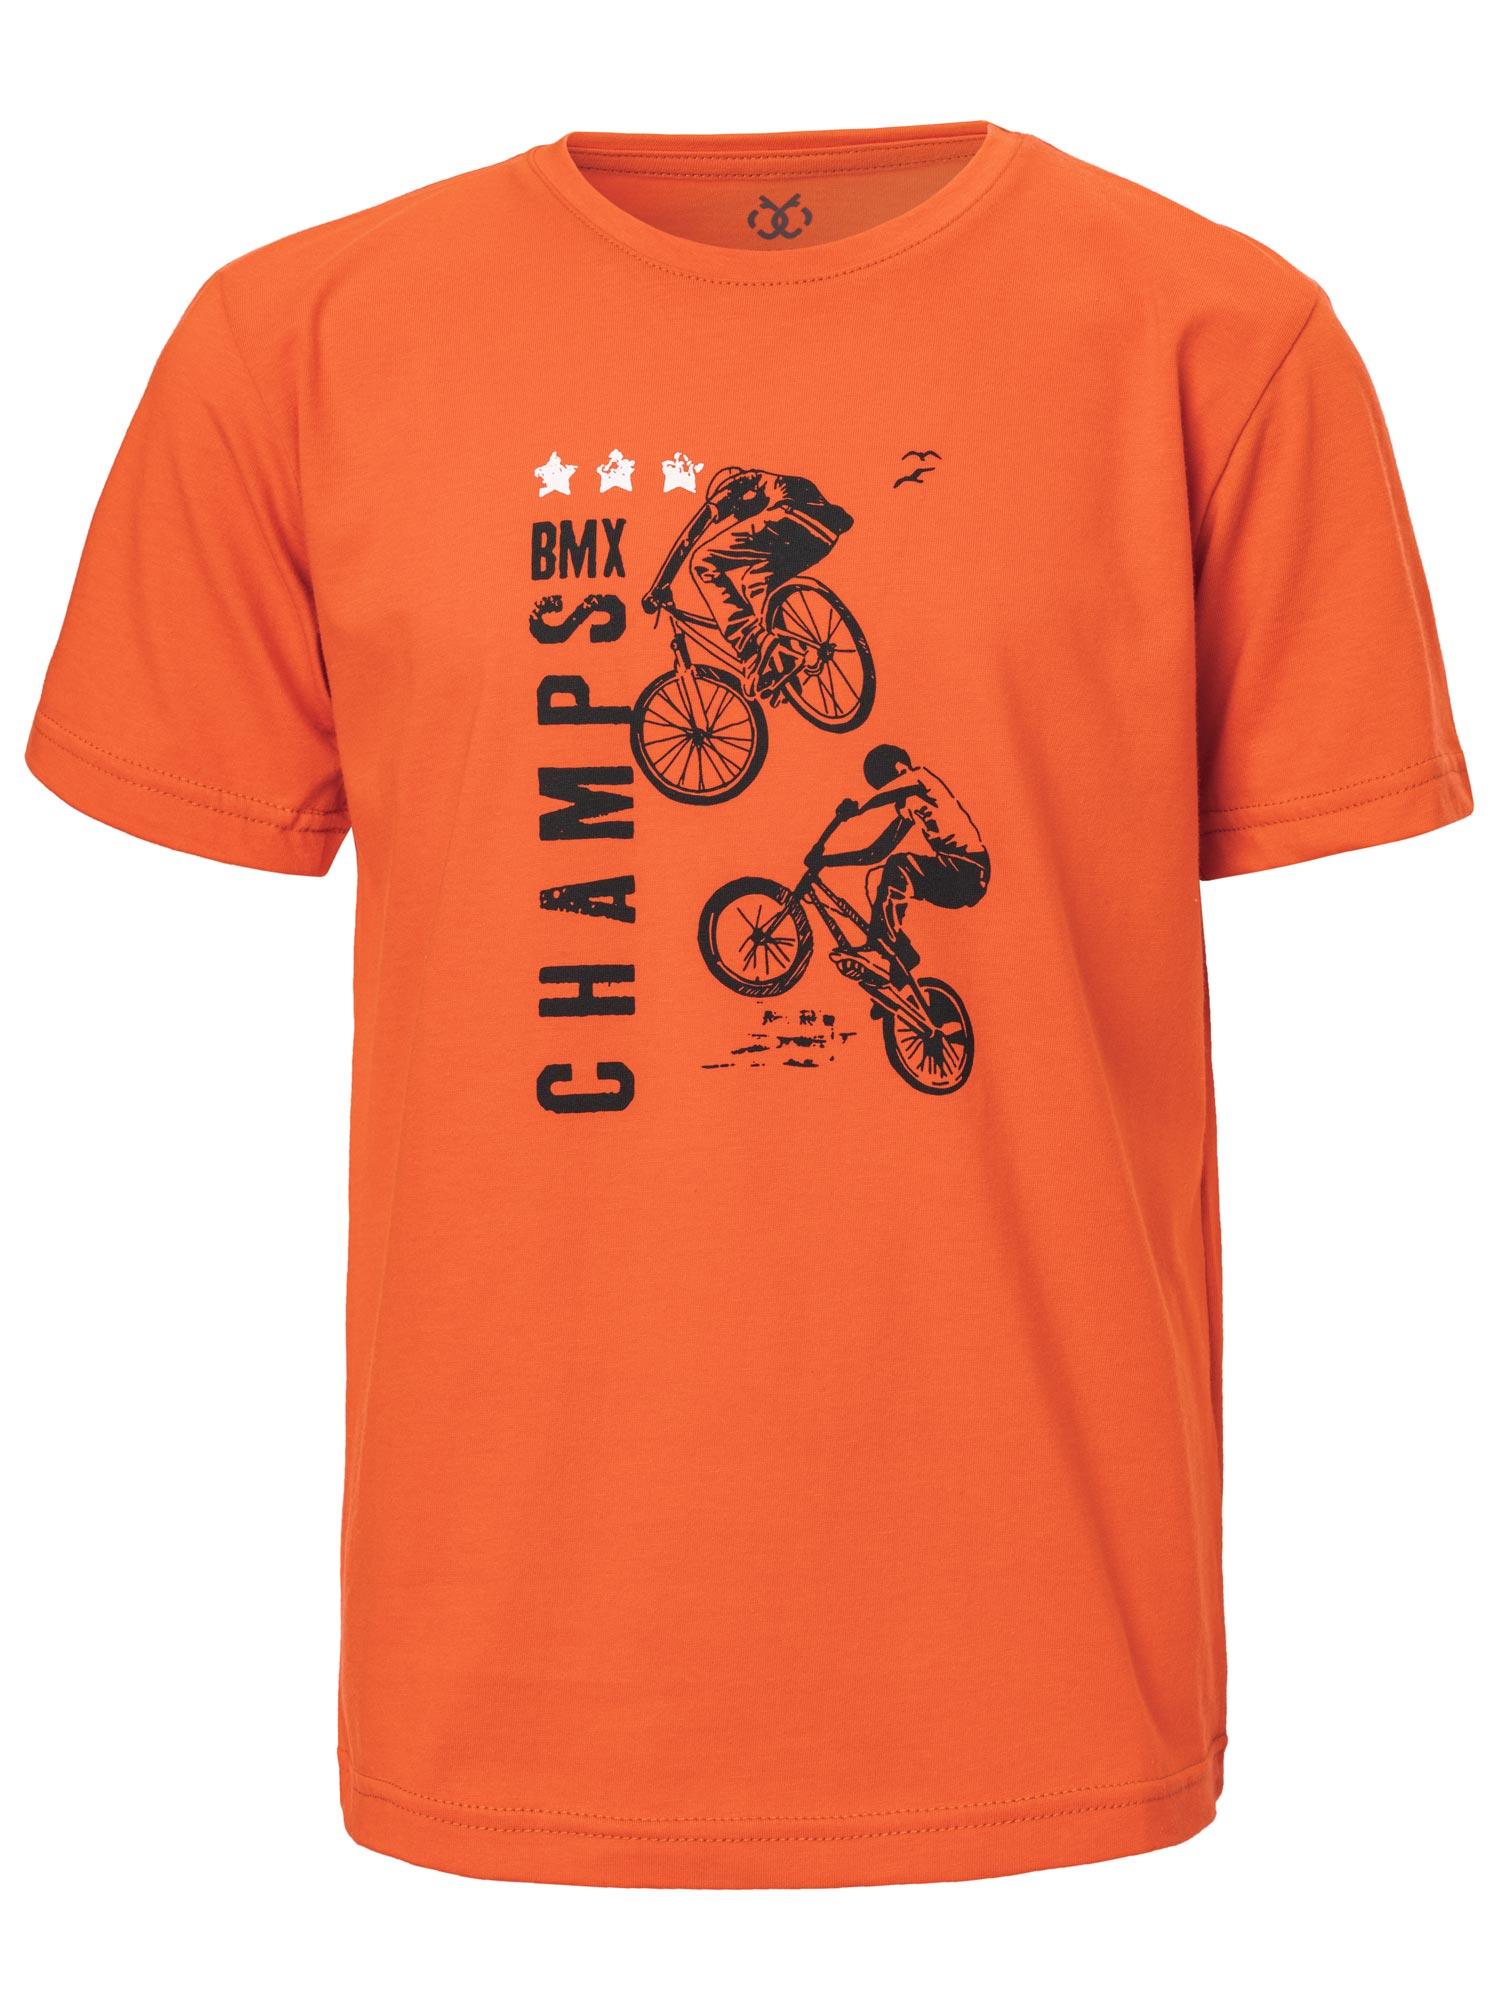 Selected image for BRILLE Majica za dečake BMX narandžasta